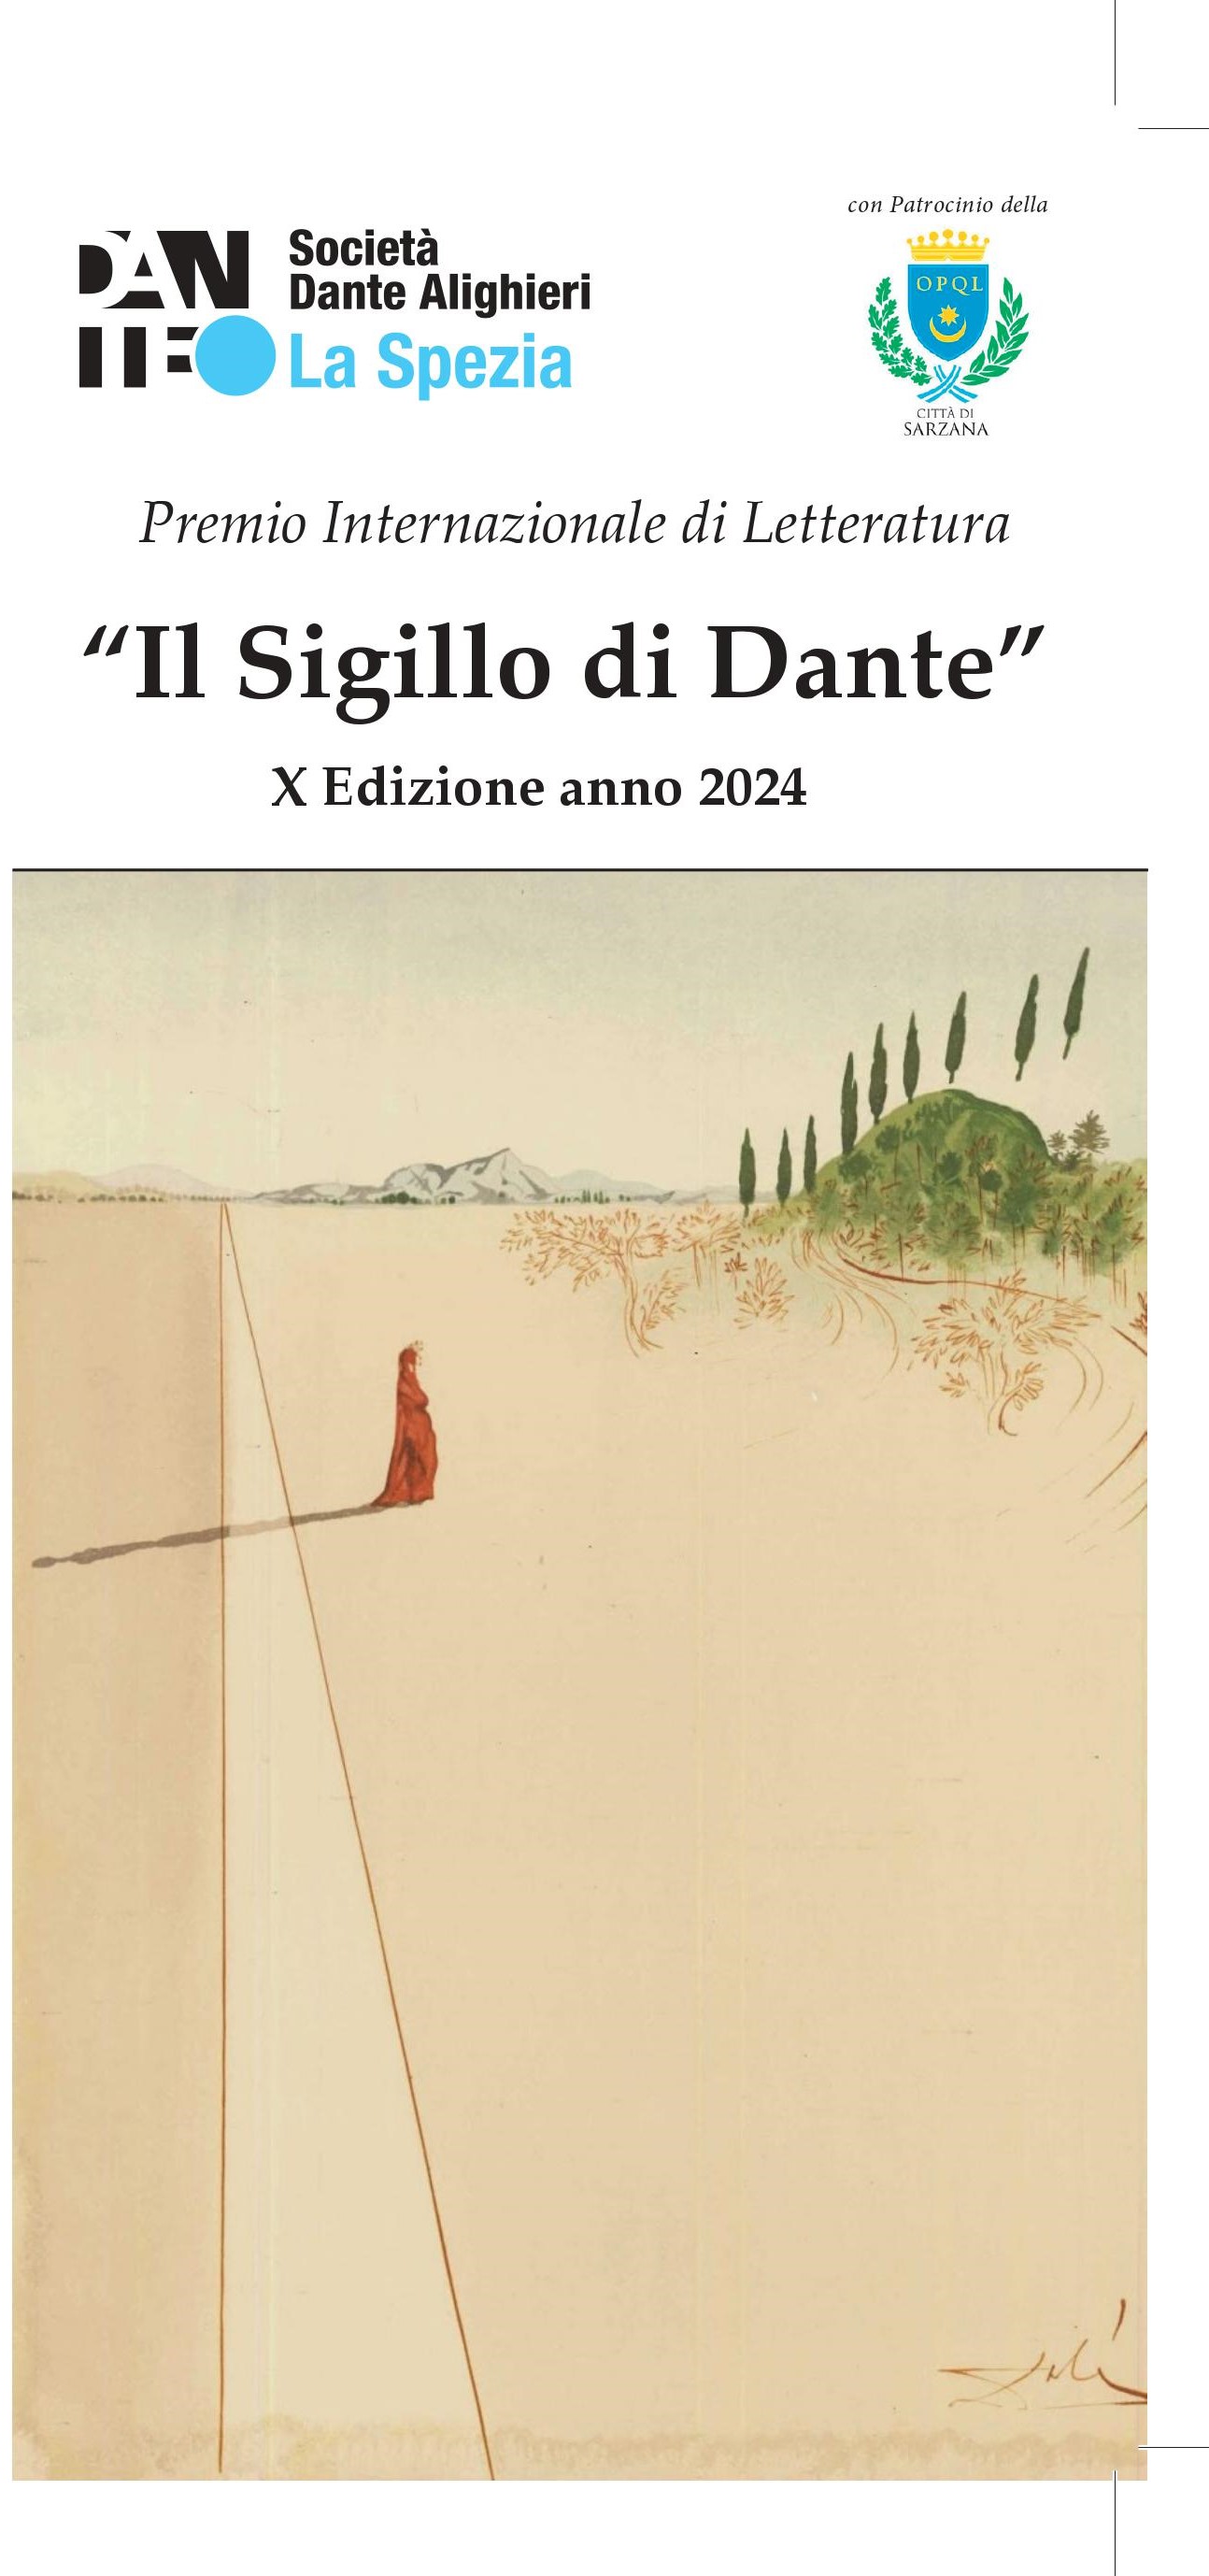 Premio Internazionale di Letteratura “Il Sigillo di Dante” X° Edizione anno 2024